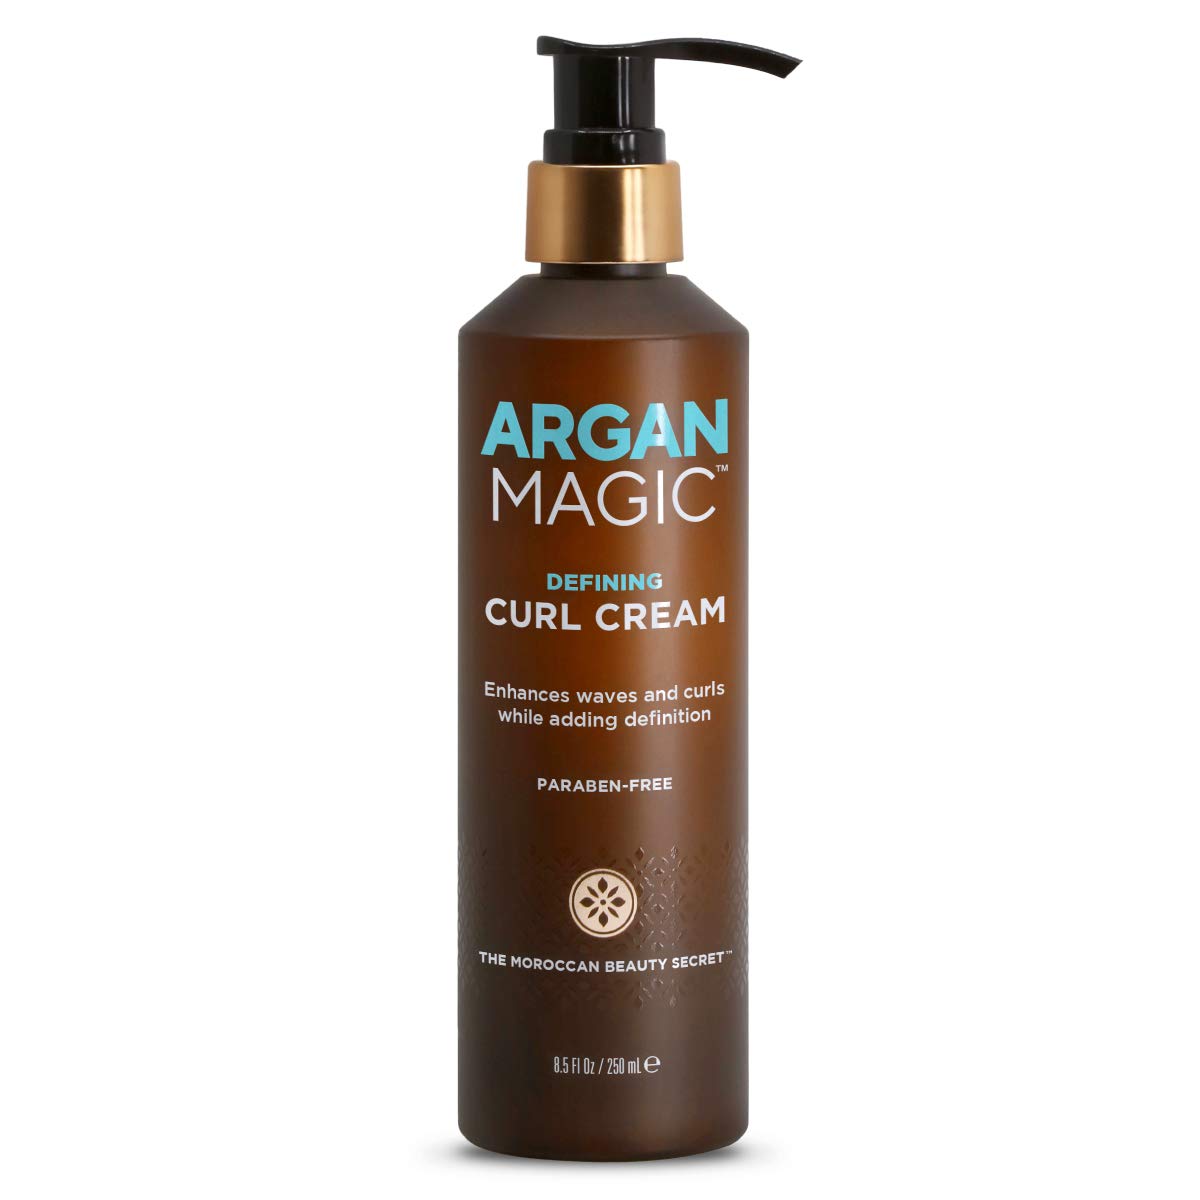 ARGAN MAGIC Defining Curl Cream.